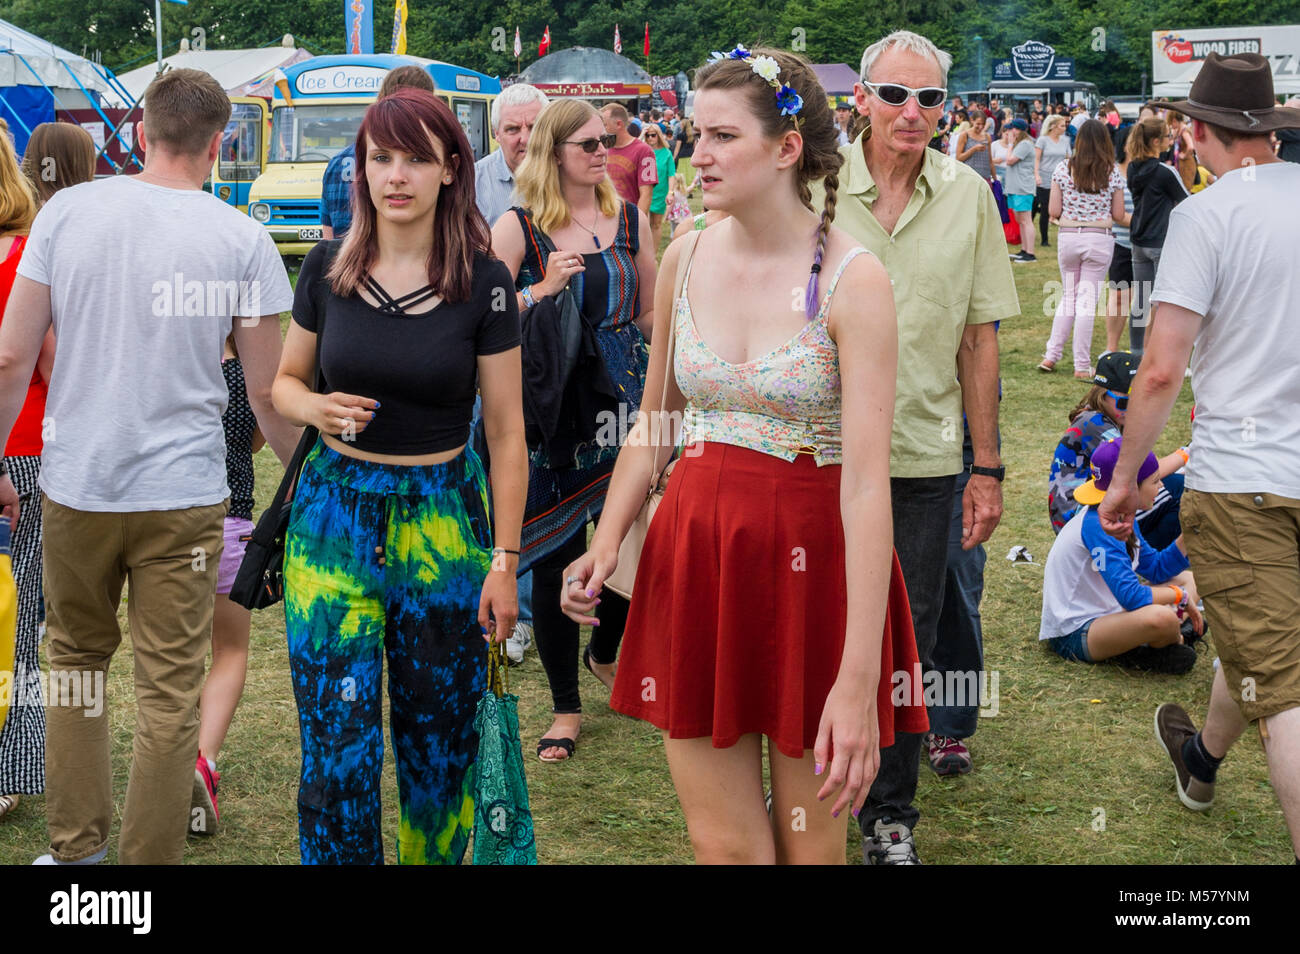 Foule de festivaliers/personnes à Godiva Festival de musique live de Coventry, Coventry, Royaume-Uni en juillet 2017. Banque D'Images